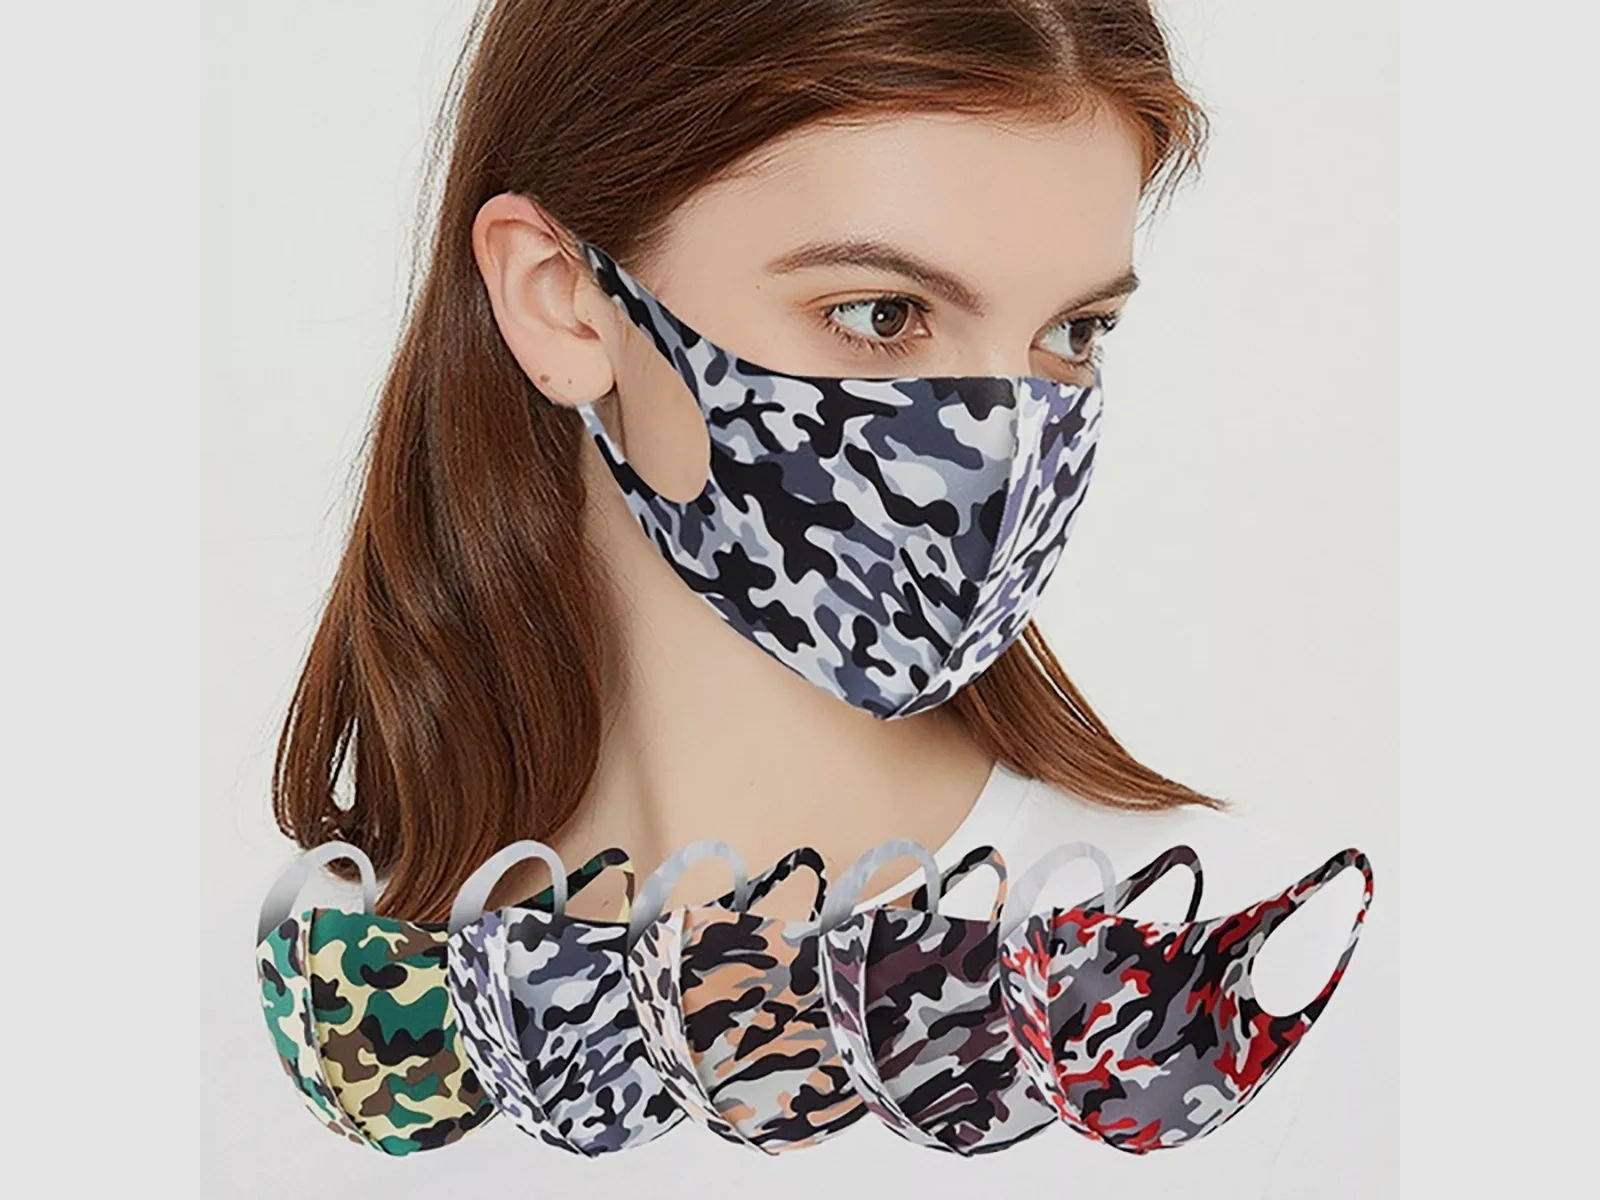 Mund-Nase-Abdeckung / Community Maske -Camouflage Grün- für Sie und Ihn